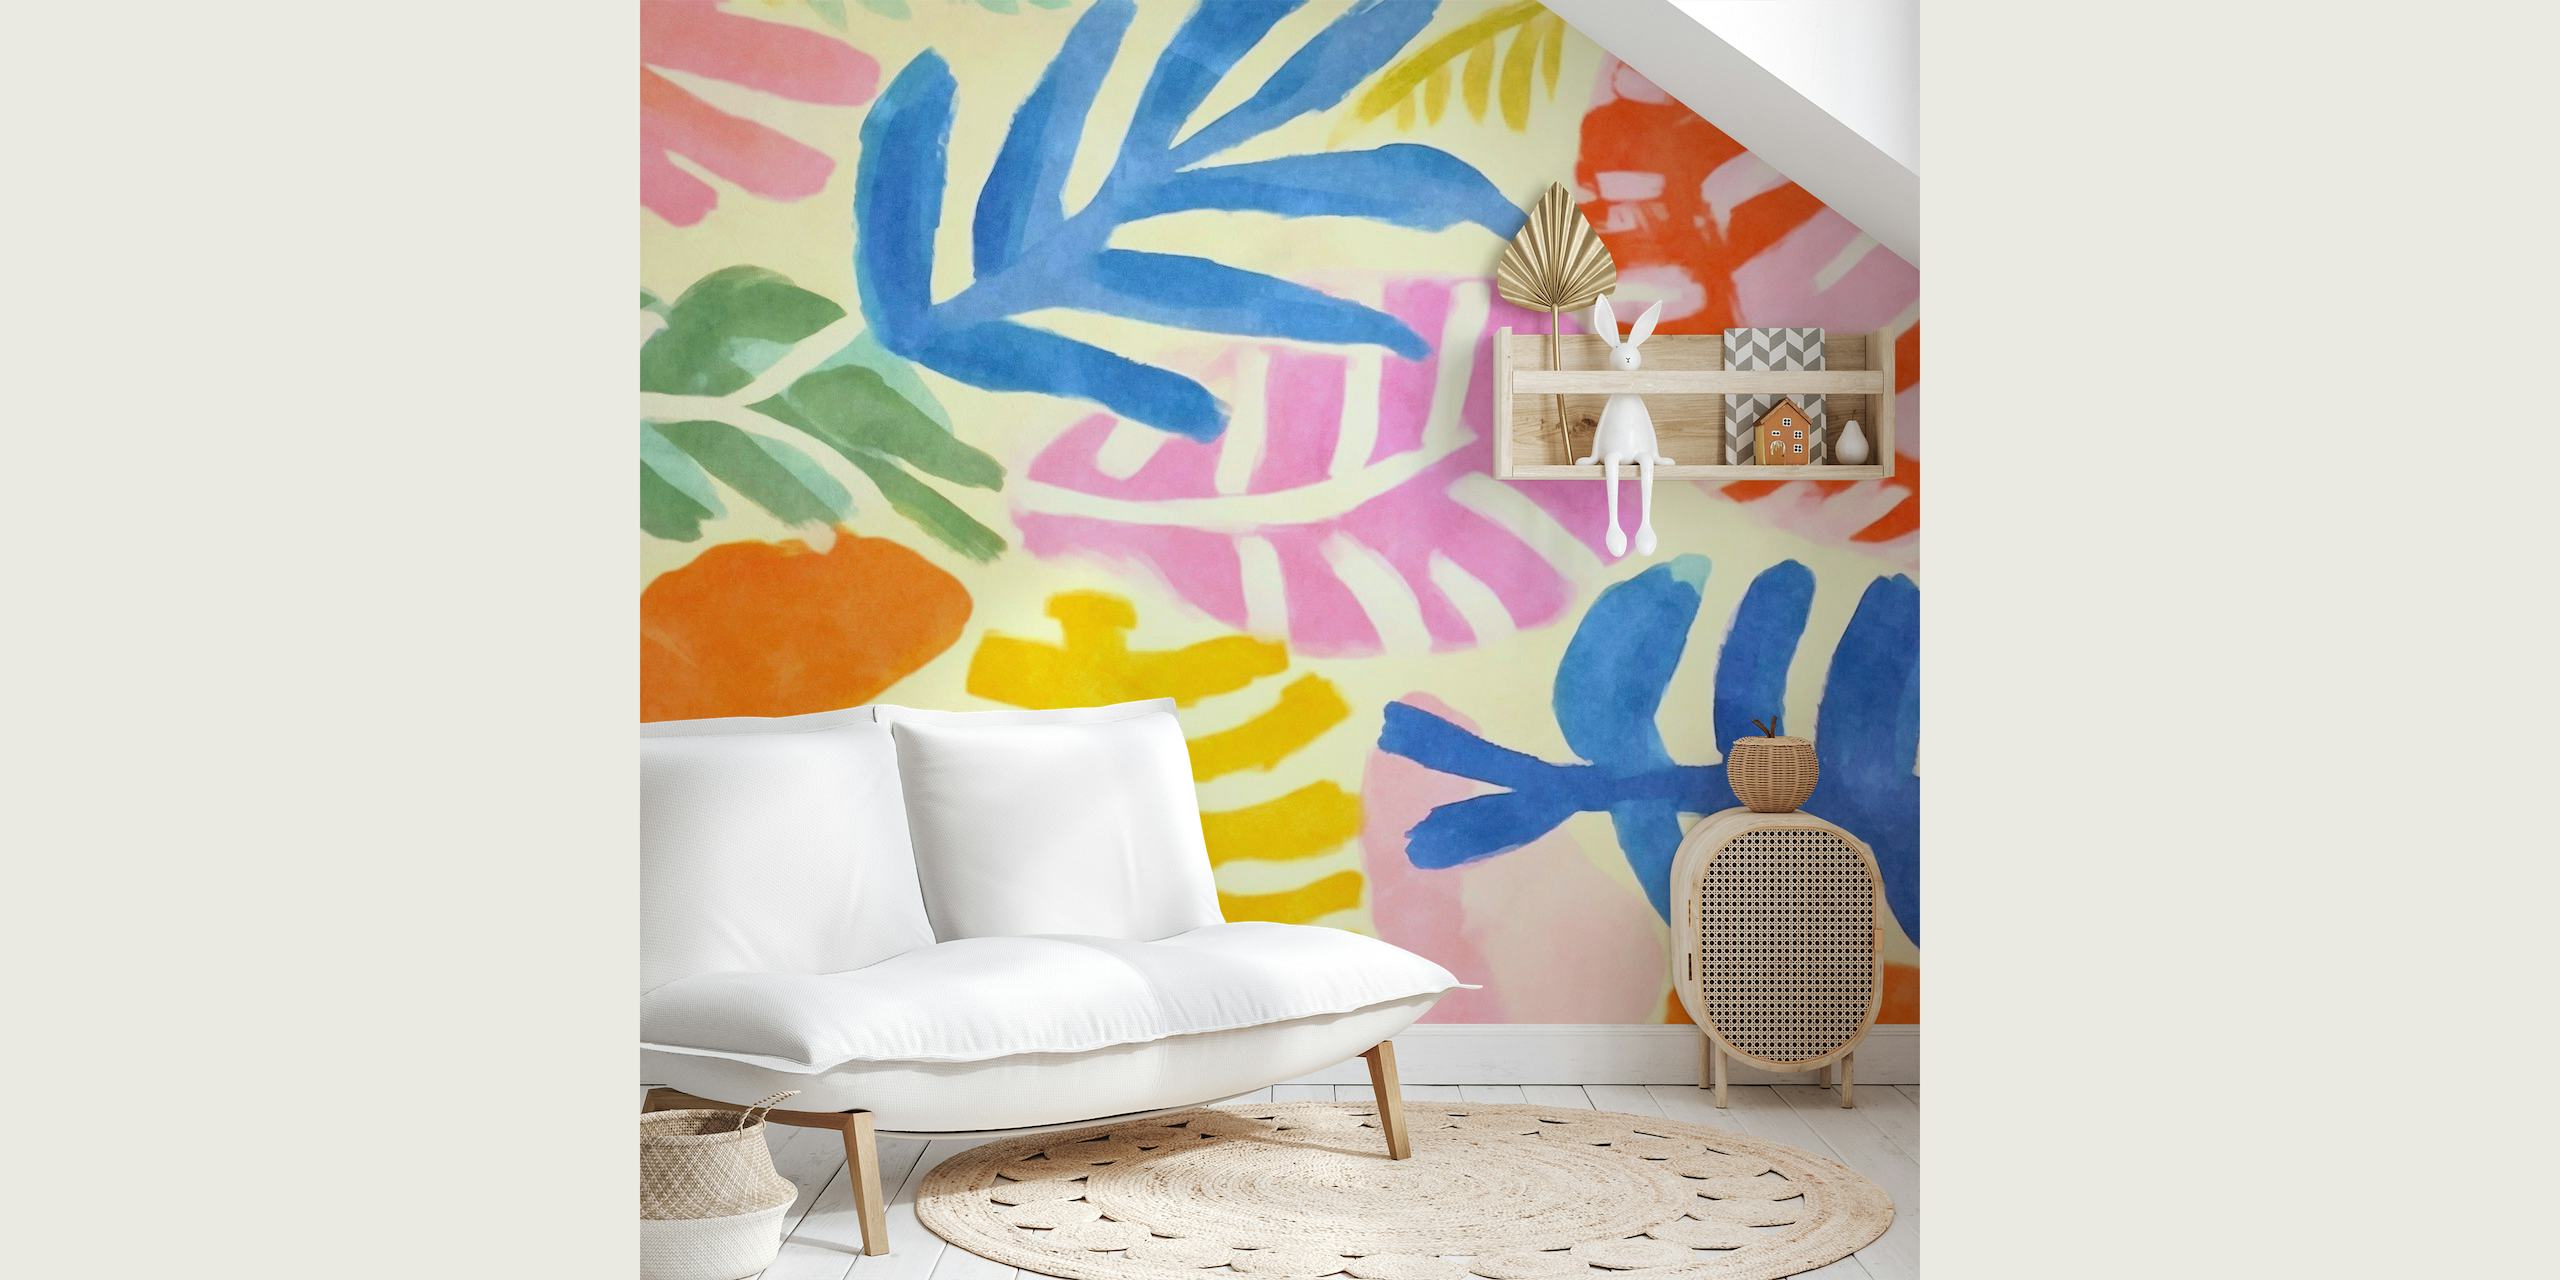 Colorido mural floral abstracto al estilo de Henri Matisse, con divertidos diseños recortados